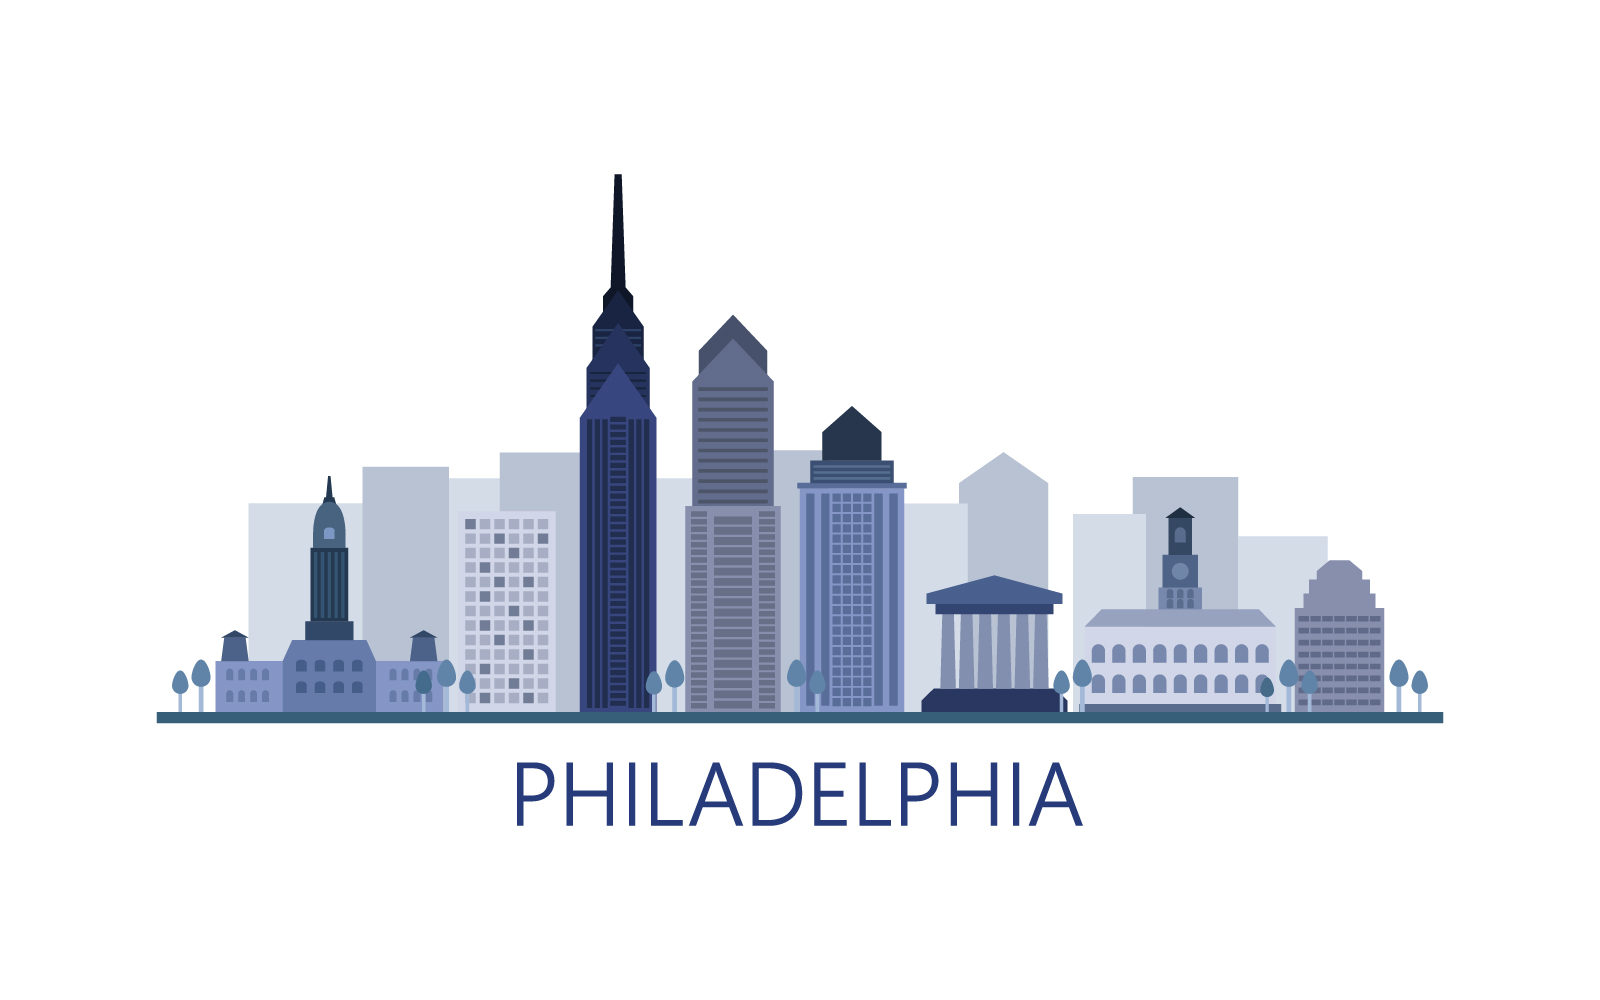 Philadelphia skyline in vector on a white background